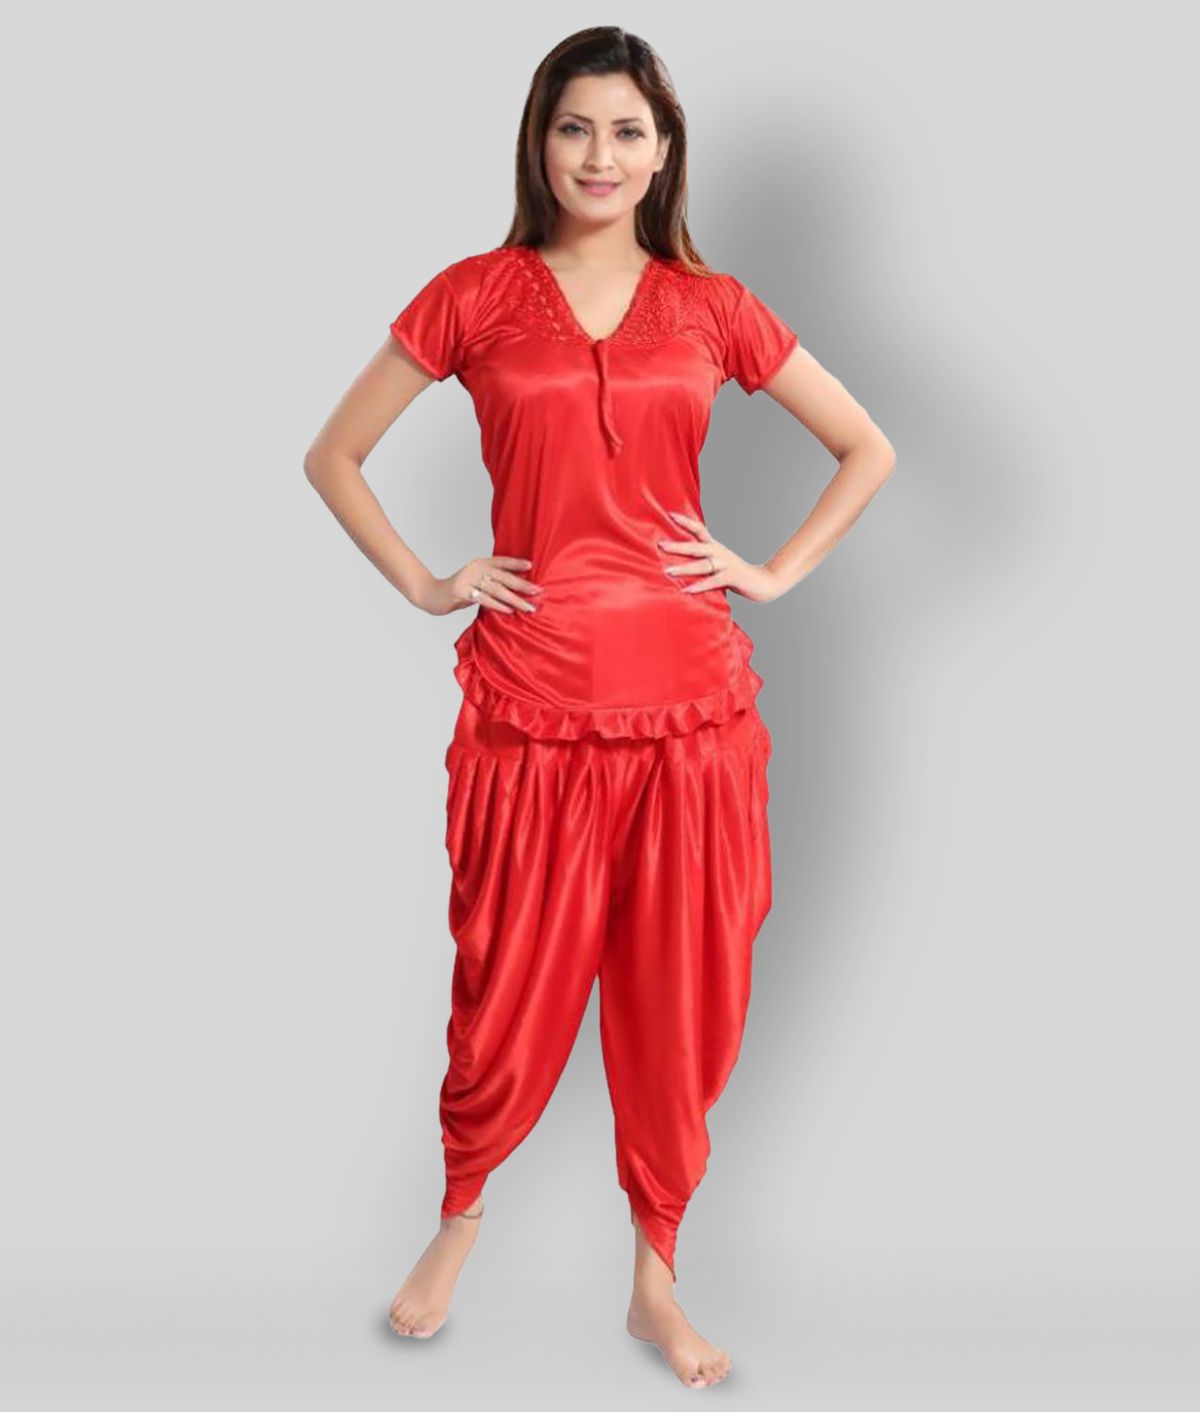     			Romaisa - Red Satin Women's Nightwear Nightsuit Sets